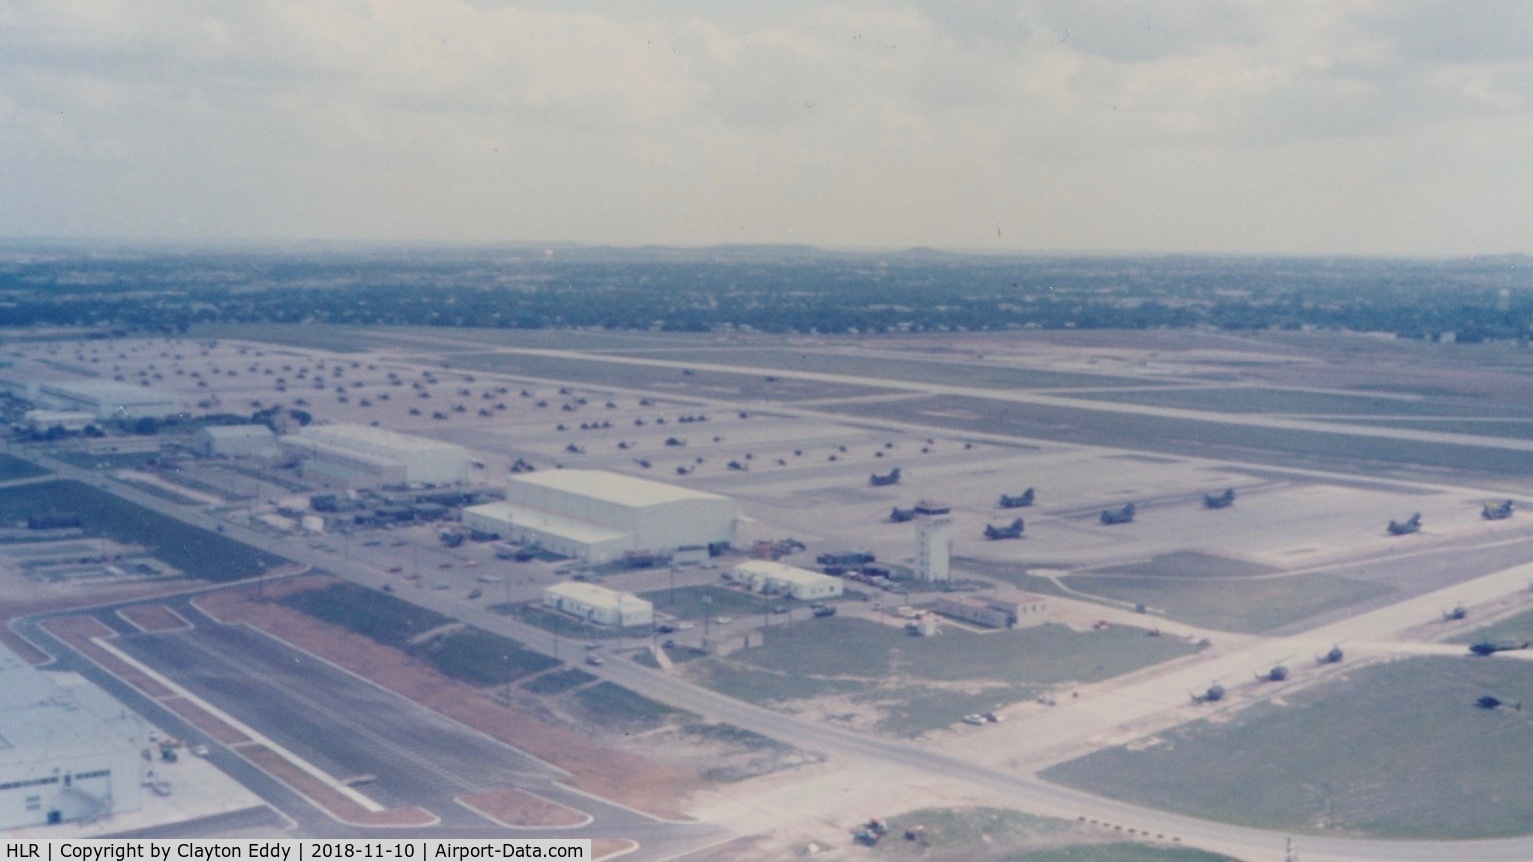 Hood Aaf Airport (HLR) - Fort Hood Army Air Field 1982